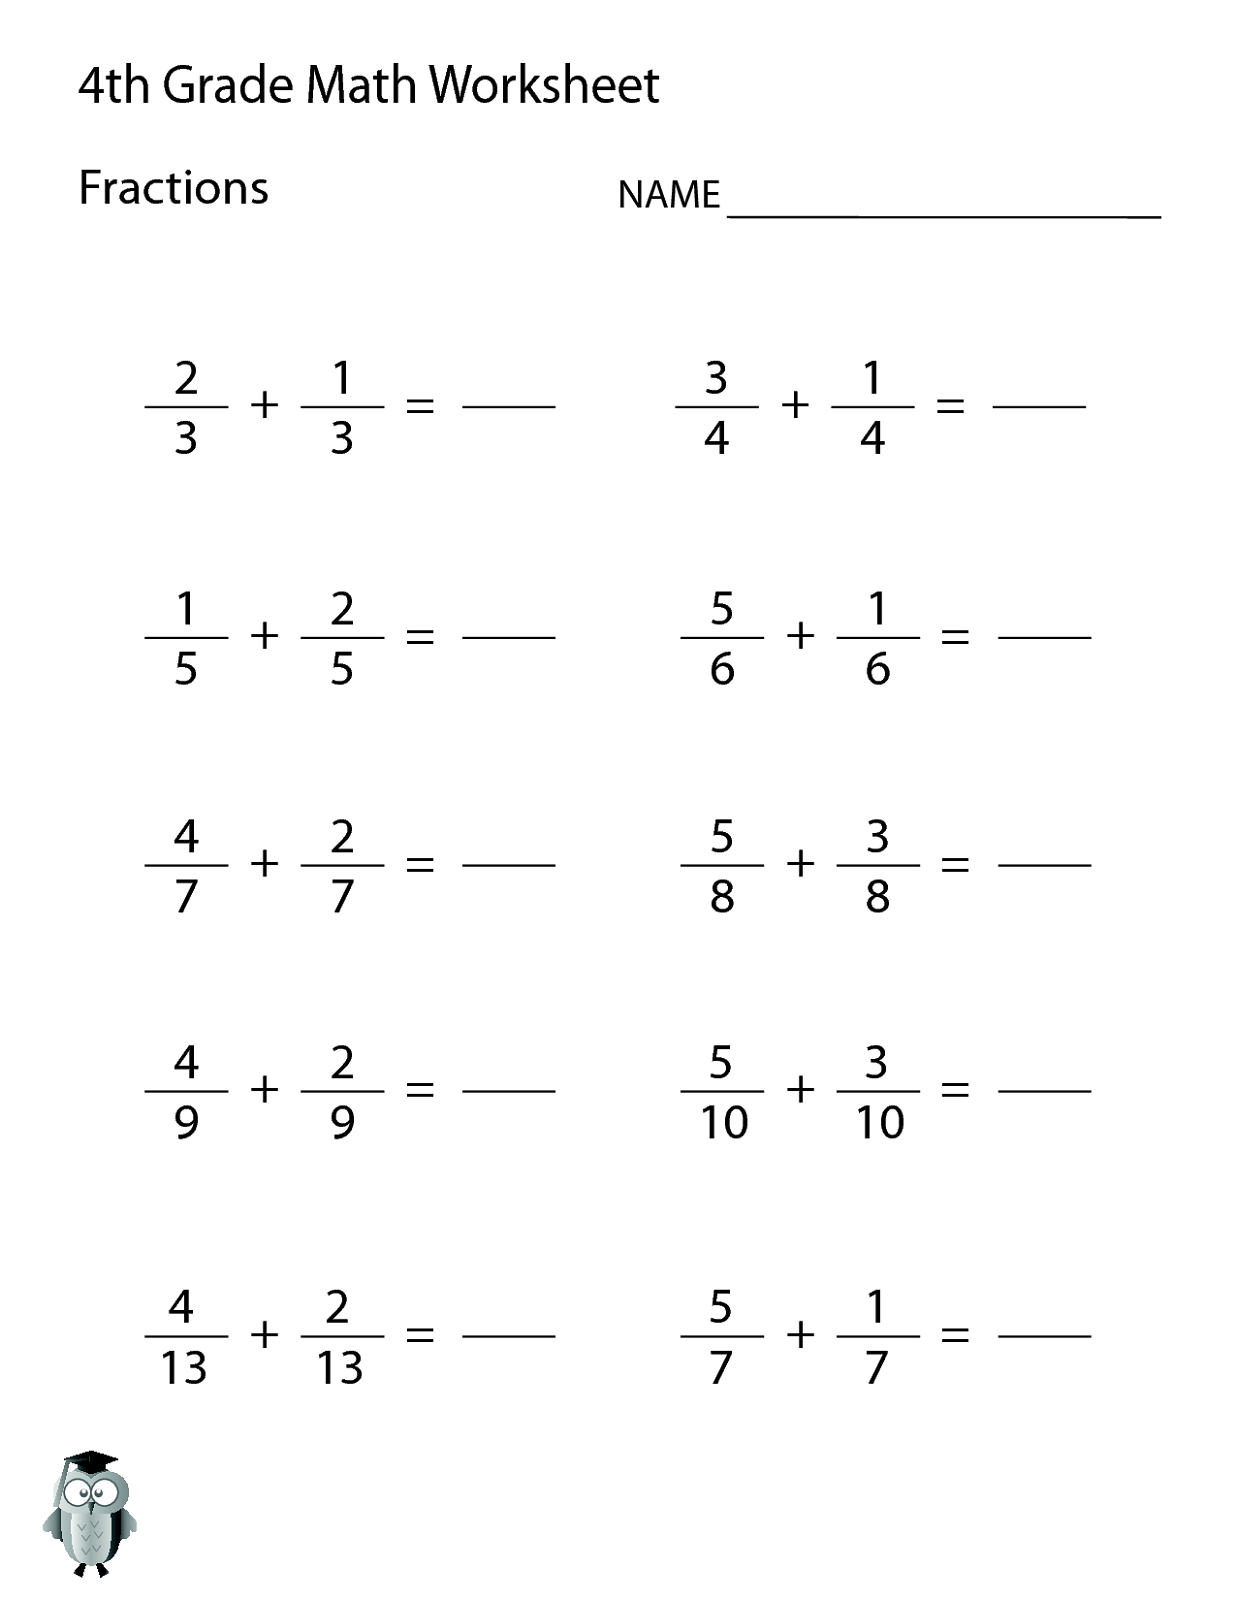 Math homework for 4th grade - drugerreport269.web.fc2.com